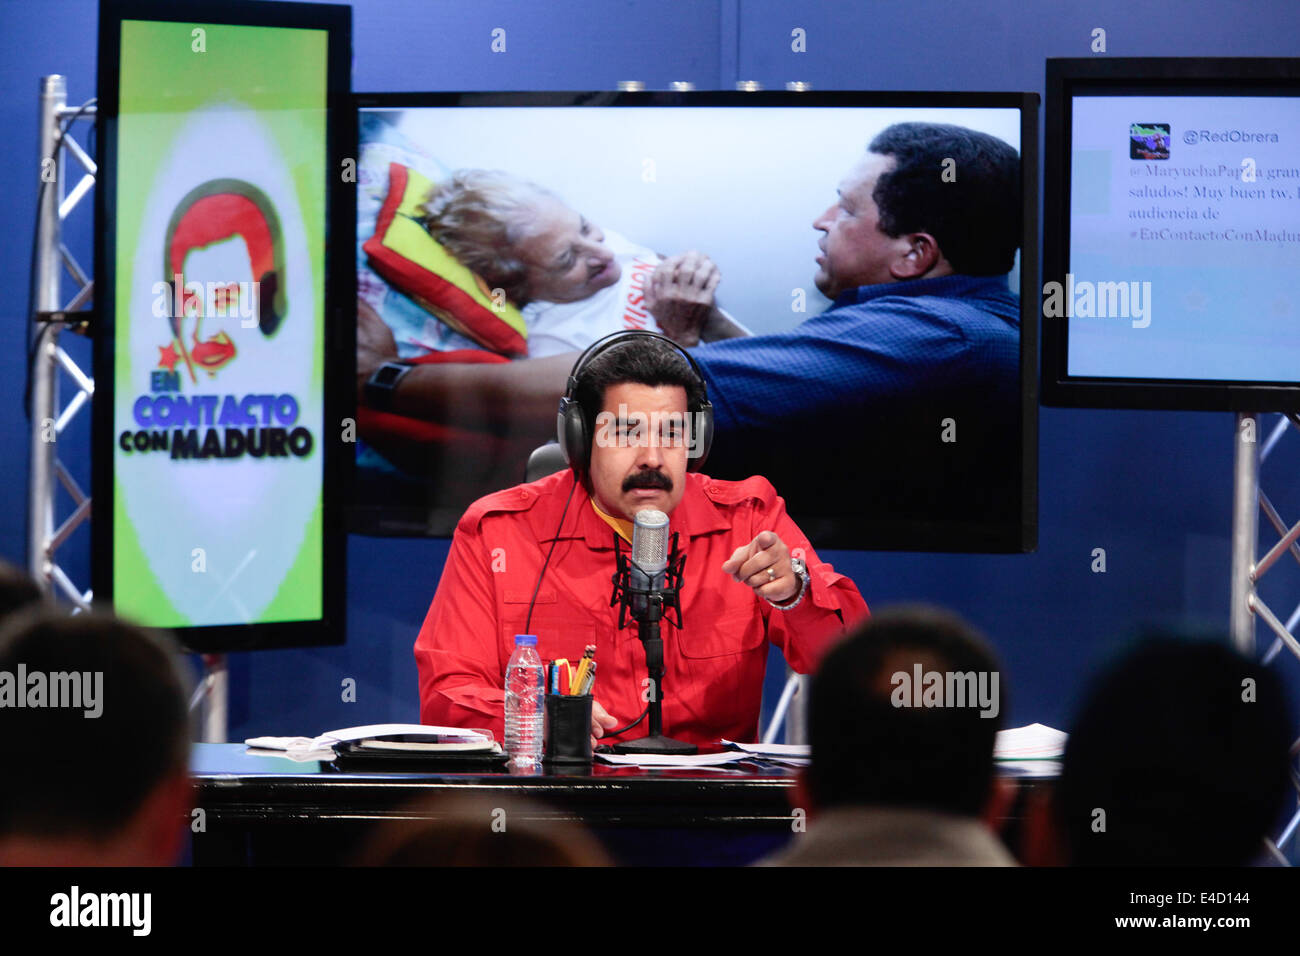 Caracas, Venezuela. 8 juillet, 2014. Le président vénézuélien Nicolas Maduro participe à la 14e édition de son émission de radio 'en contacto con Maduro', d'Ayacucho Prix du palais de Miraflores, à Caracas, Venezuela, le 8 juillet 2014. © Presse présidentielle/AVN/Xinhua/Alamy Live News Banque D'Images